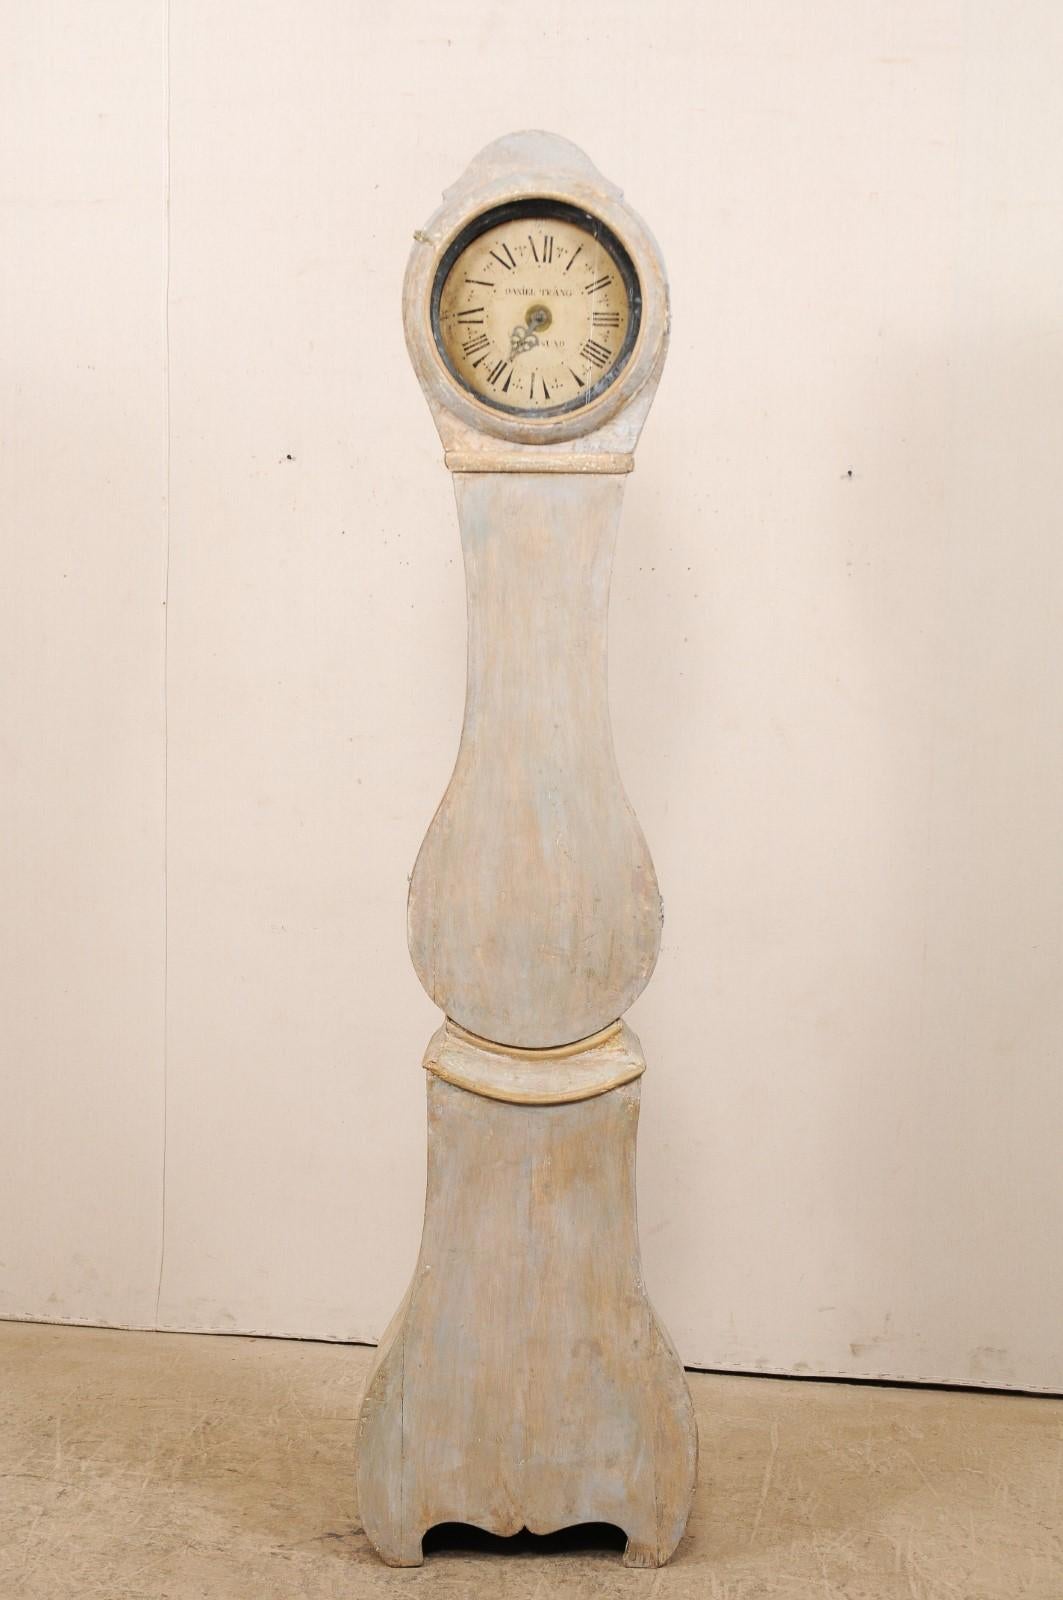 Une horloge de sol suédoise du 19ème siècle. Cette horloge ancienne de Suède est simple et sans prétention avec sa tête de forme ronde, légèrement ornée d'une crête supérieure incurvée, un cou allongé descendant sur le ventre en forme de goutte